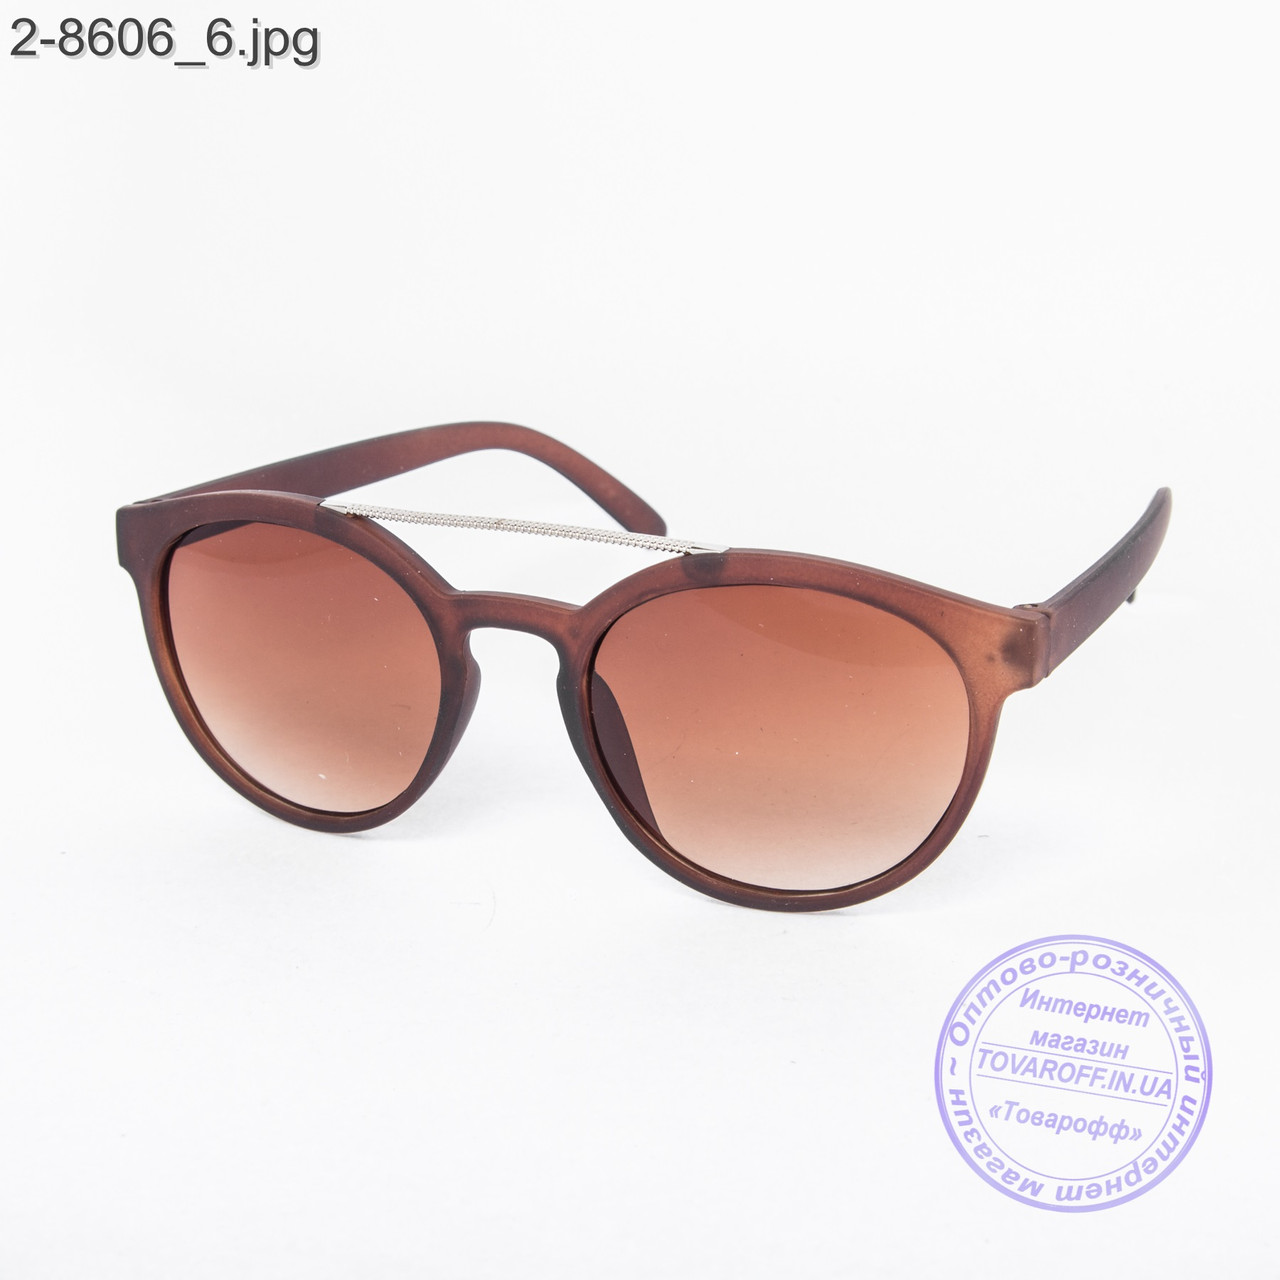 Сонцезахисні окуляри унісекс - коричневі - 2-8606